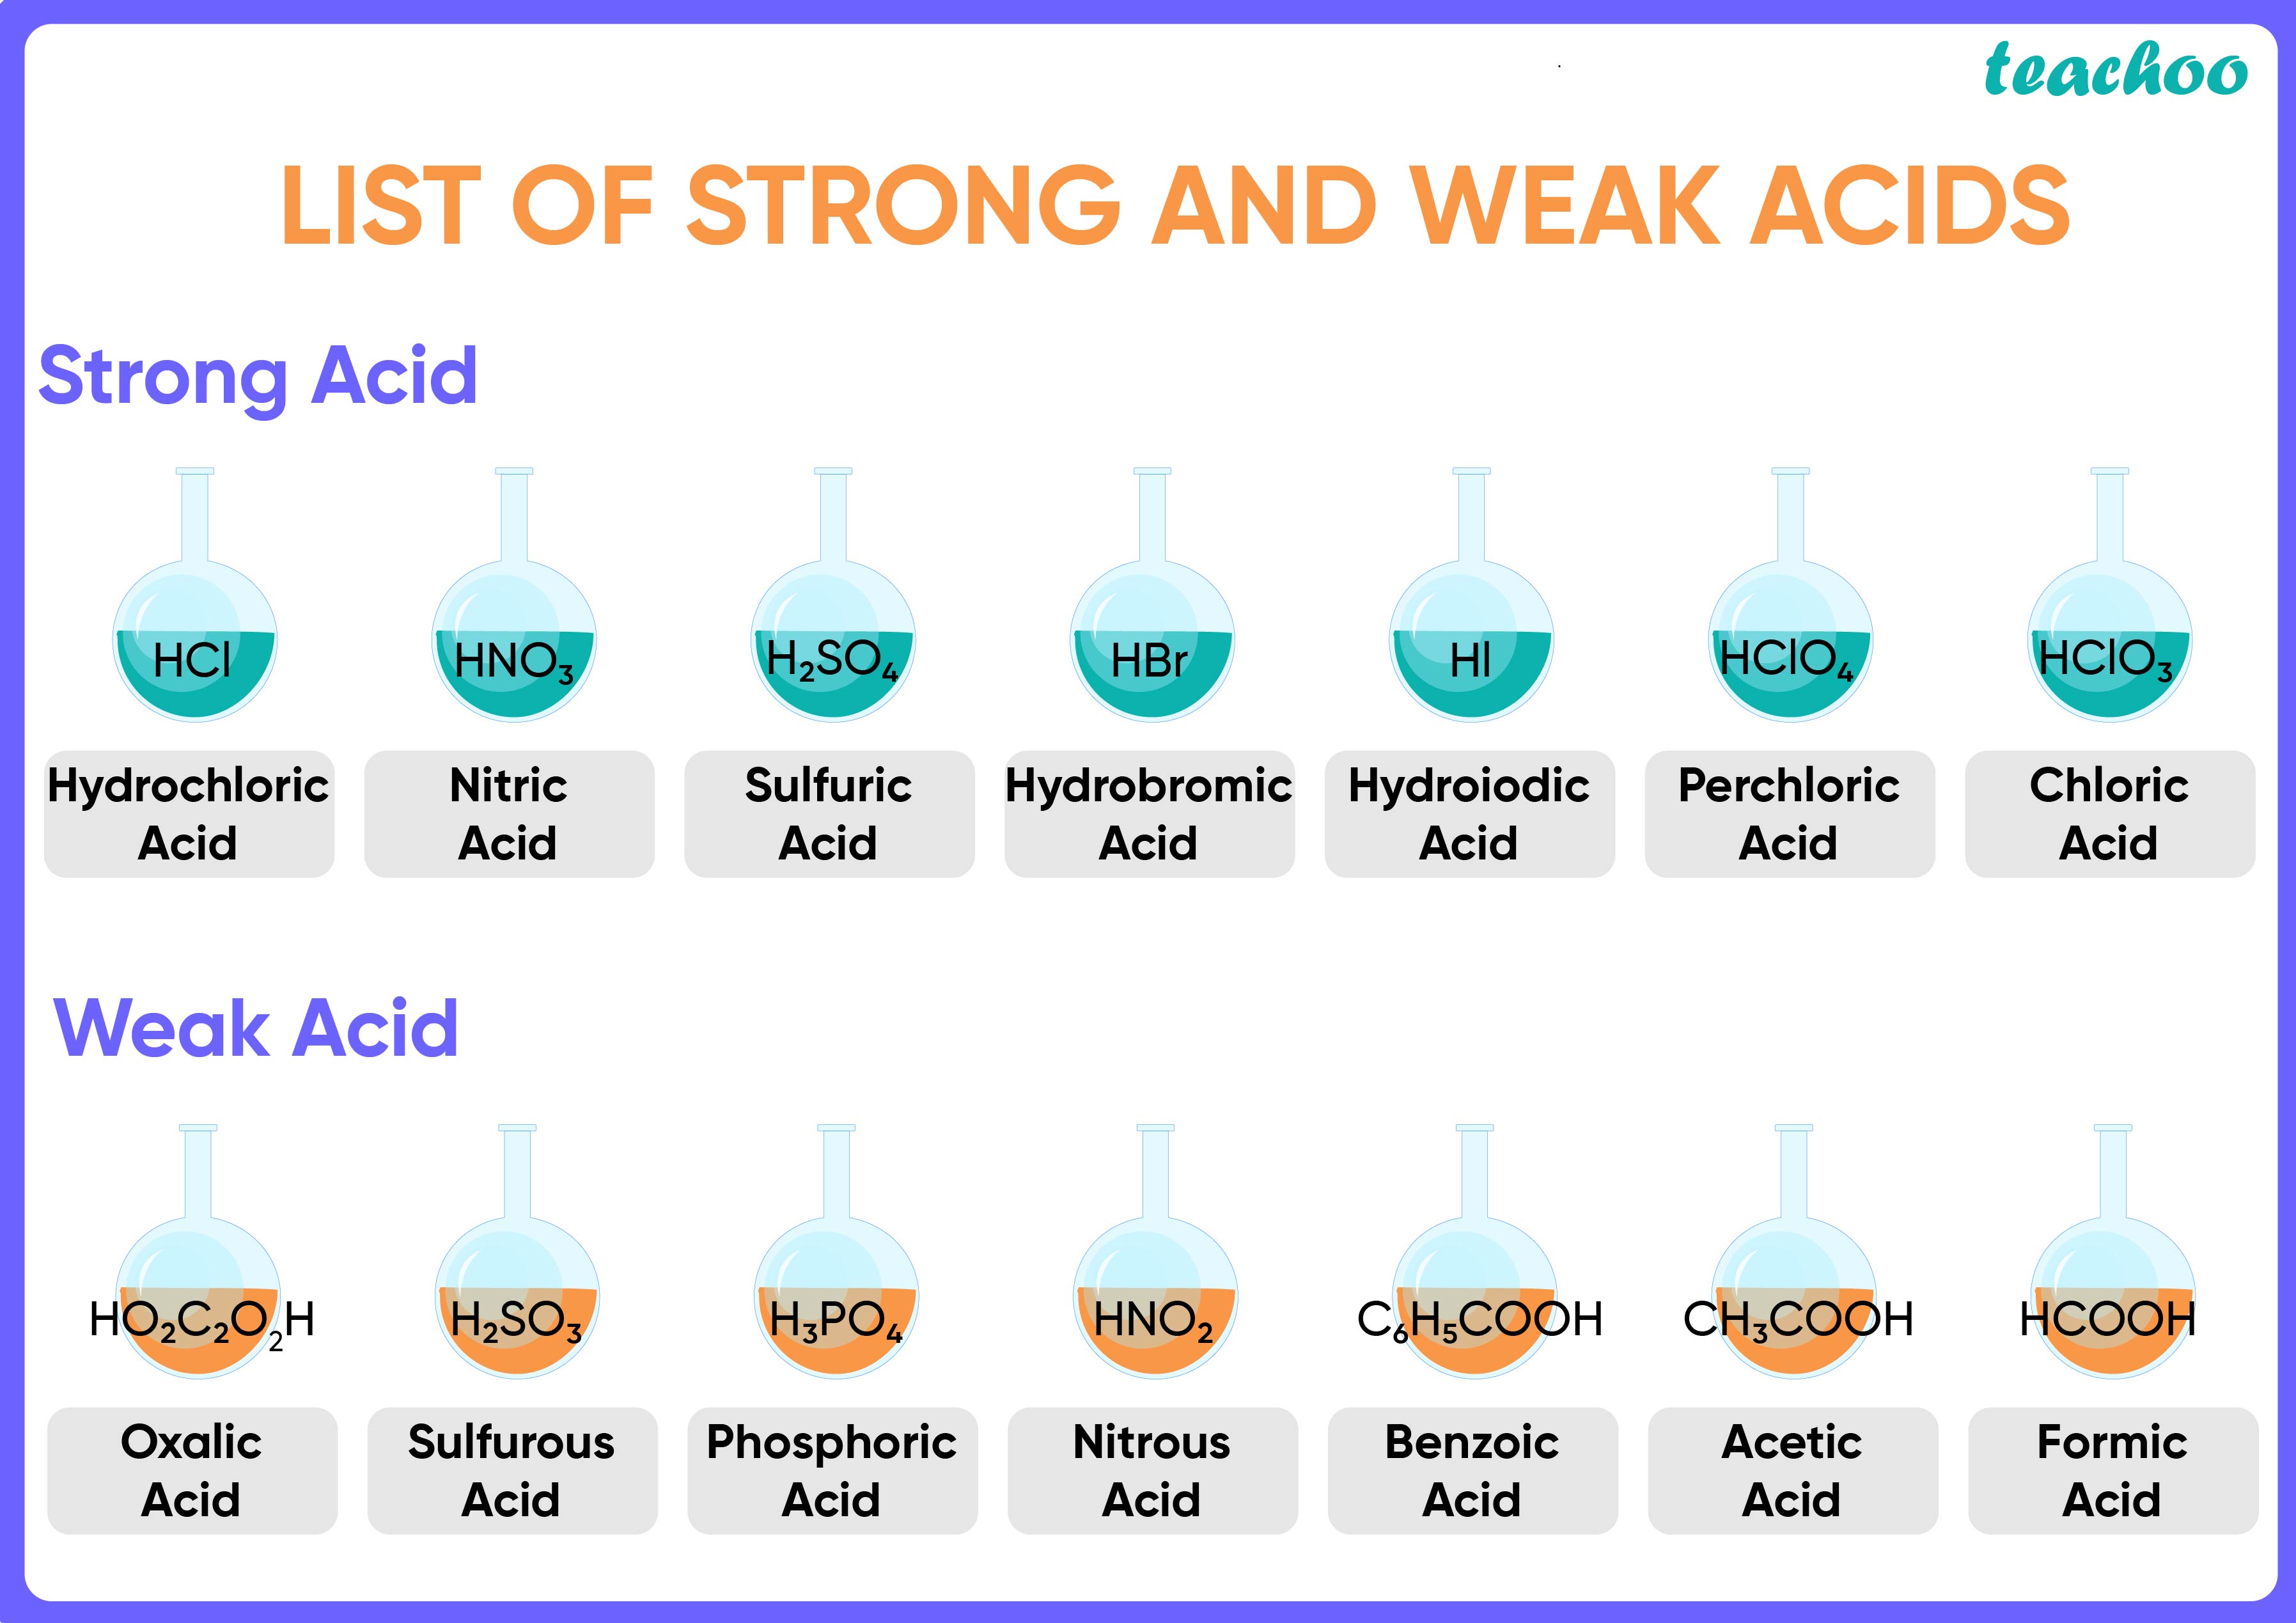 examples-of-weak-acids-5-examples-teachoo-teachoo-questions